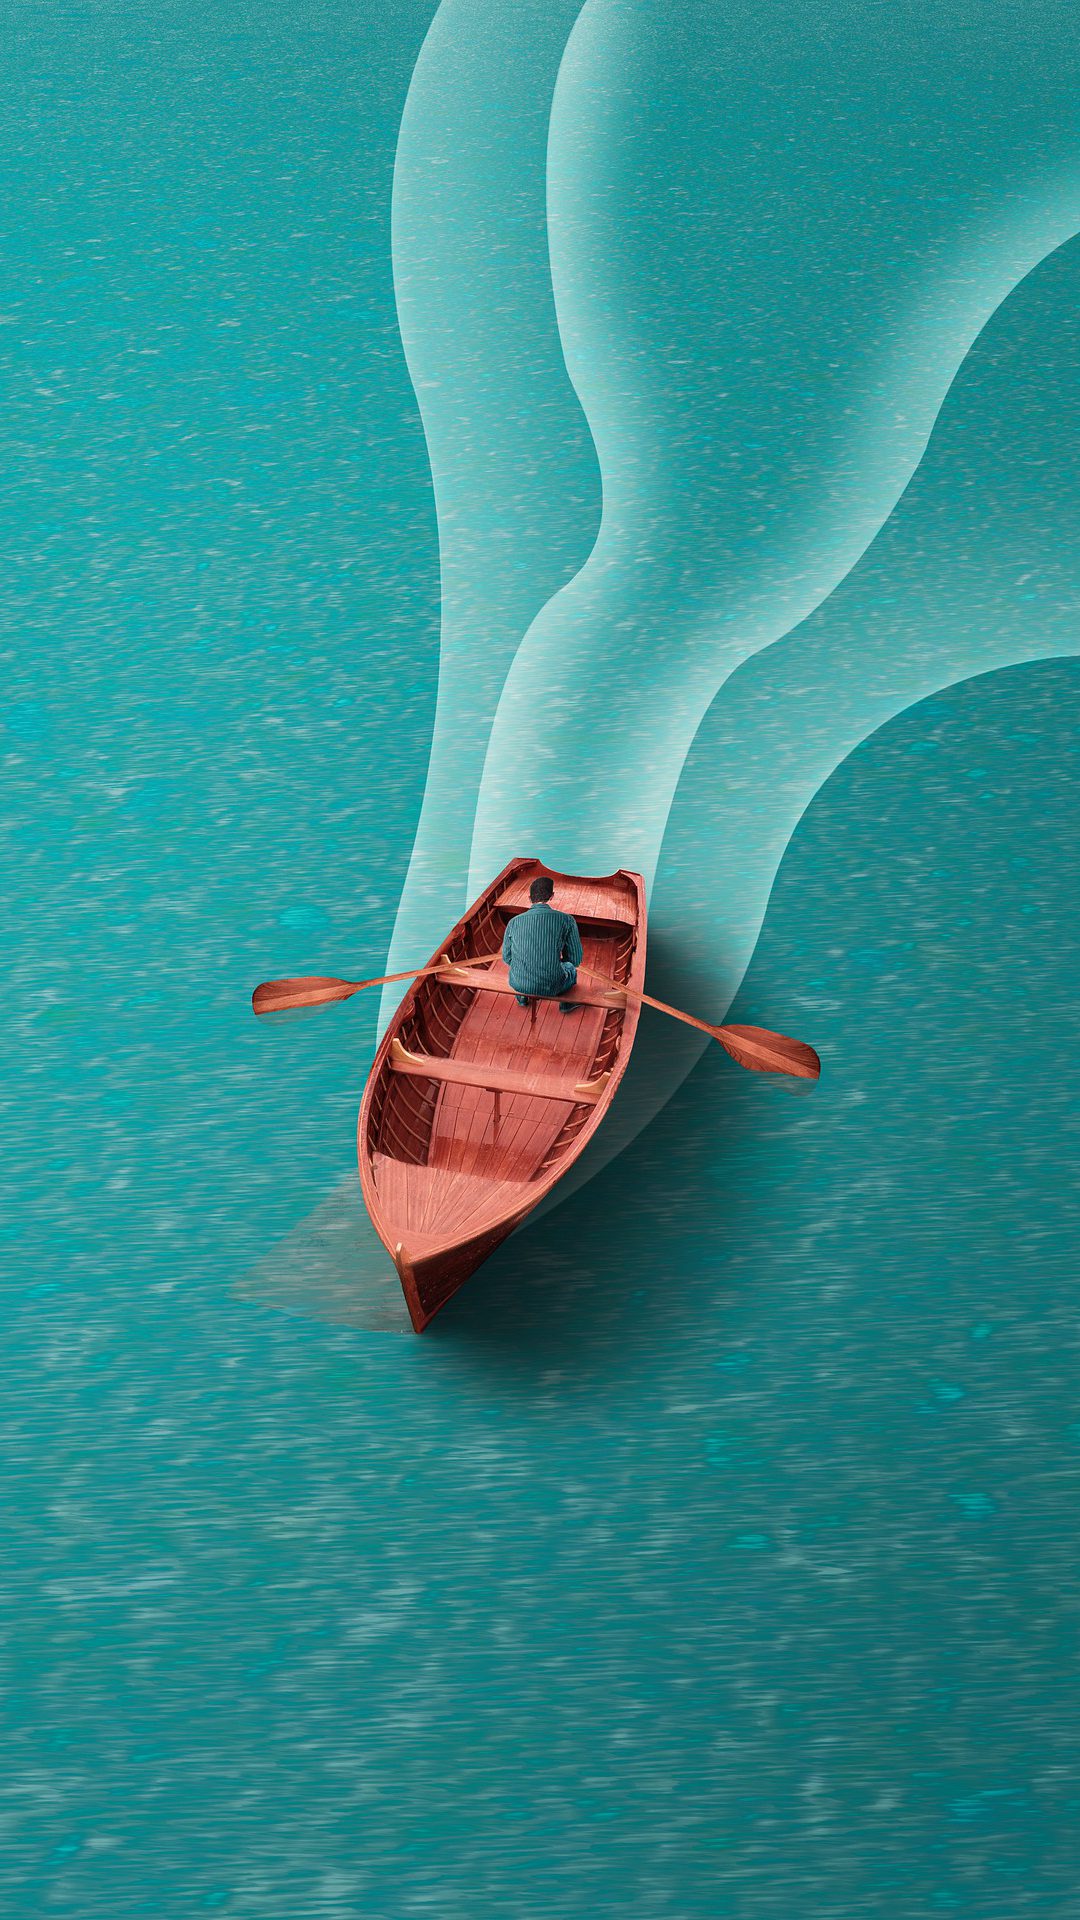 一个划船的男子非主流插画手机壁纸图片 <span style='color:red;'>平静</span>蔚蓝的湖面